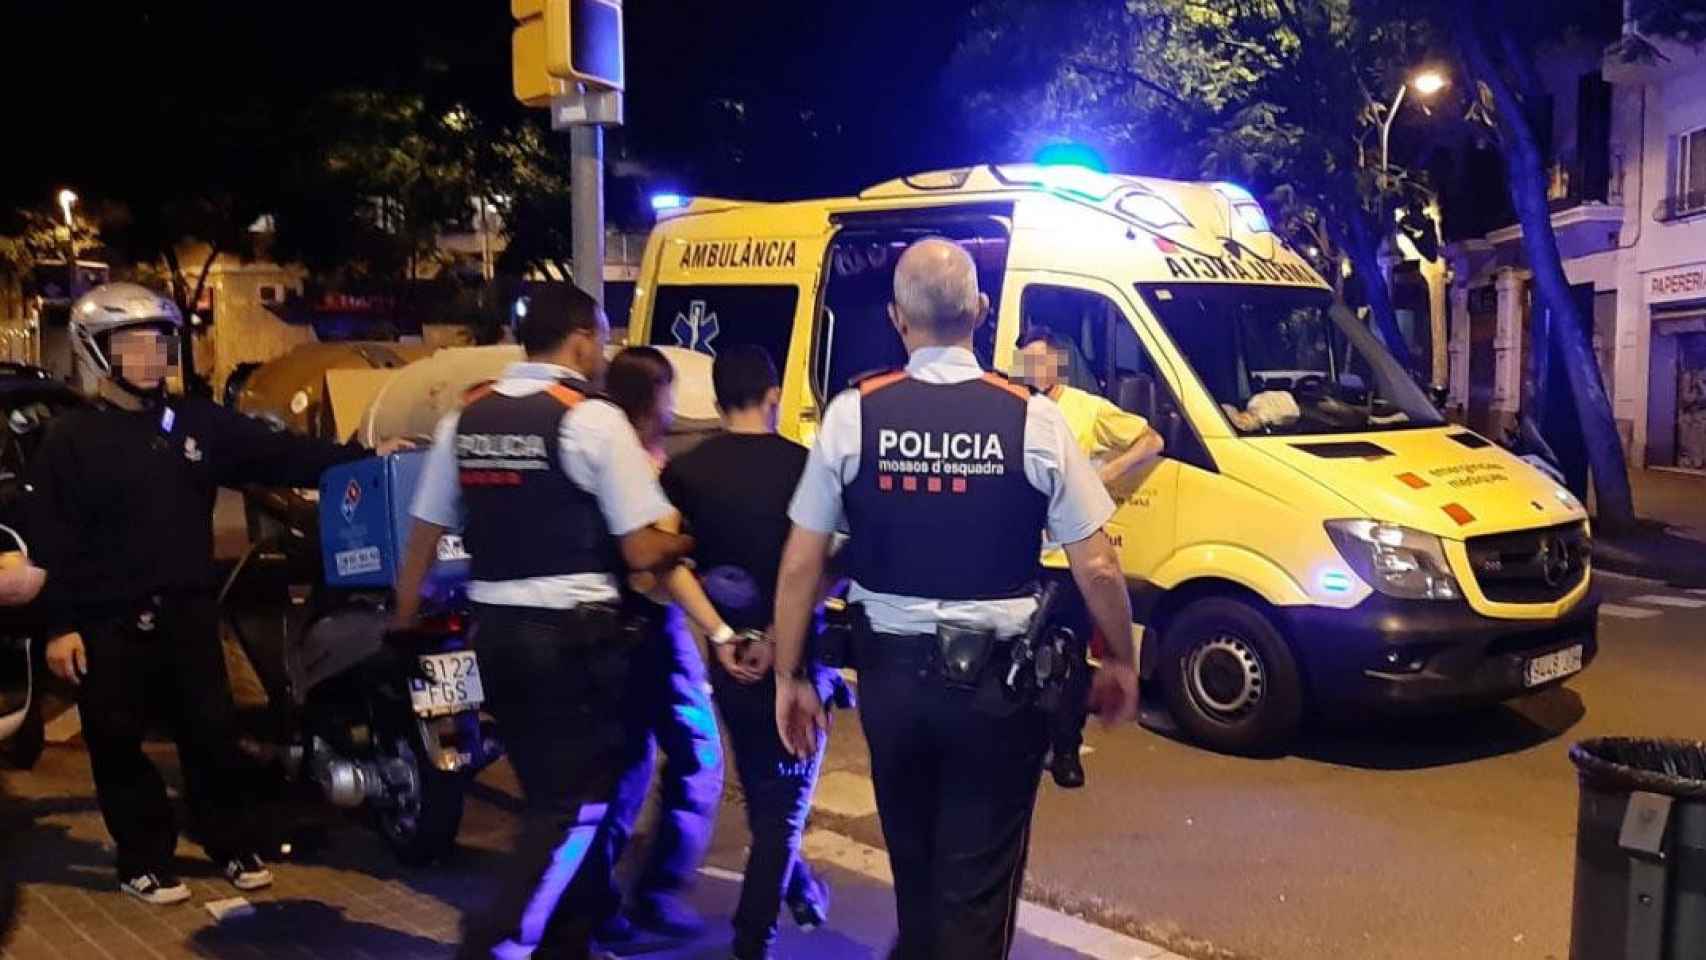 Los Mossos d'Esquadra trasladan a un hombre que se ha atrincherado con un cuchillo en una pizzería de la calle Sicilia de Barcelona / CG